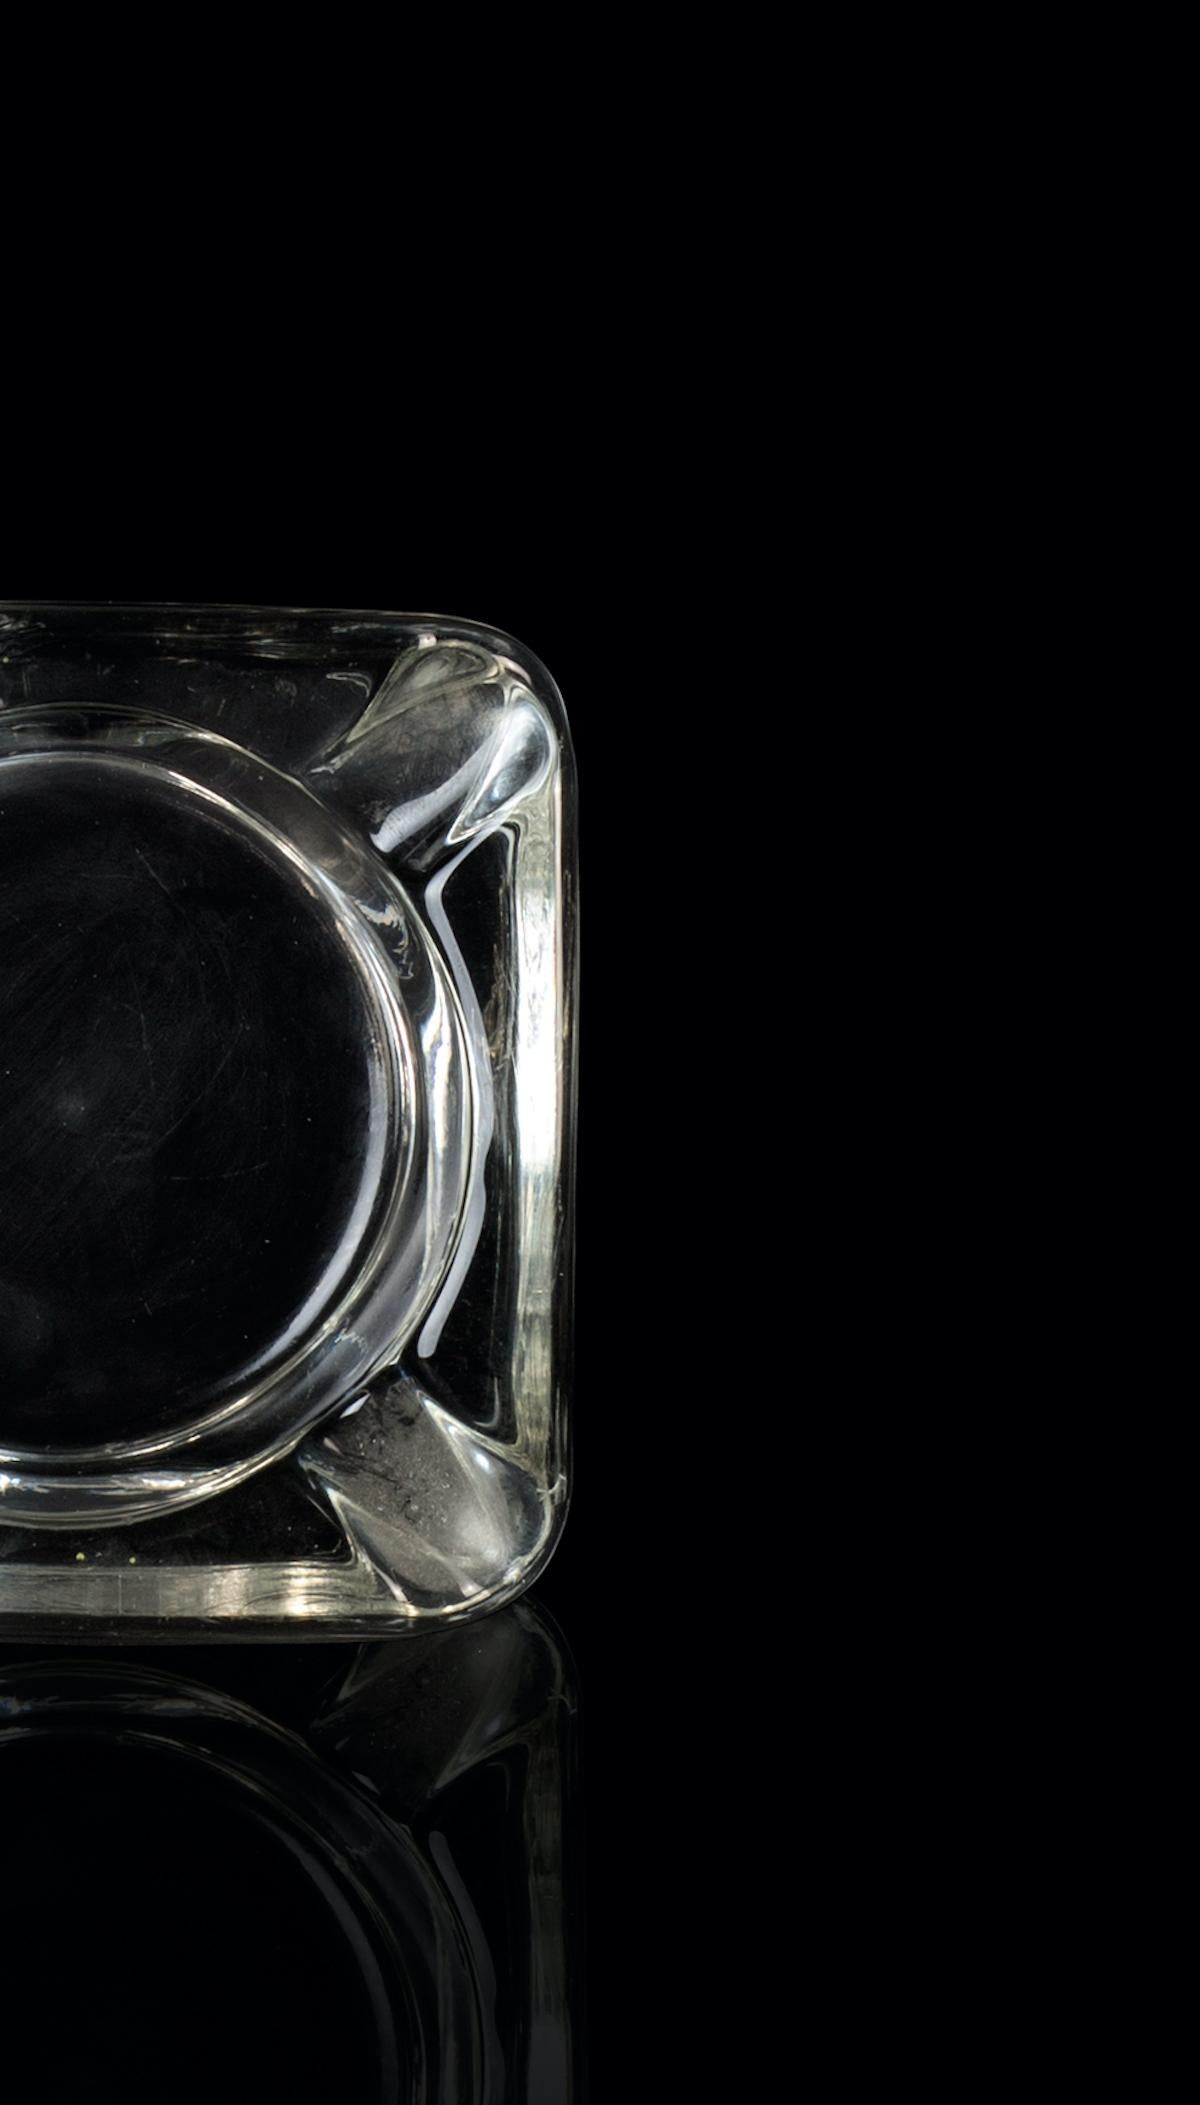 Der transparente Aschenbecher aus Glas ist ein elegantes Dekorationsobjekt aus Glas, das in den 1970er Jahren entstand. 

Sehr eleganter transparenter Aschenbecher aus Glas, perfekt für Ihr Zuhause.